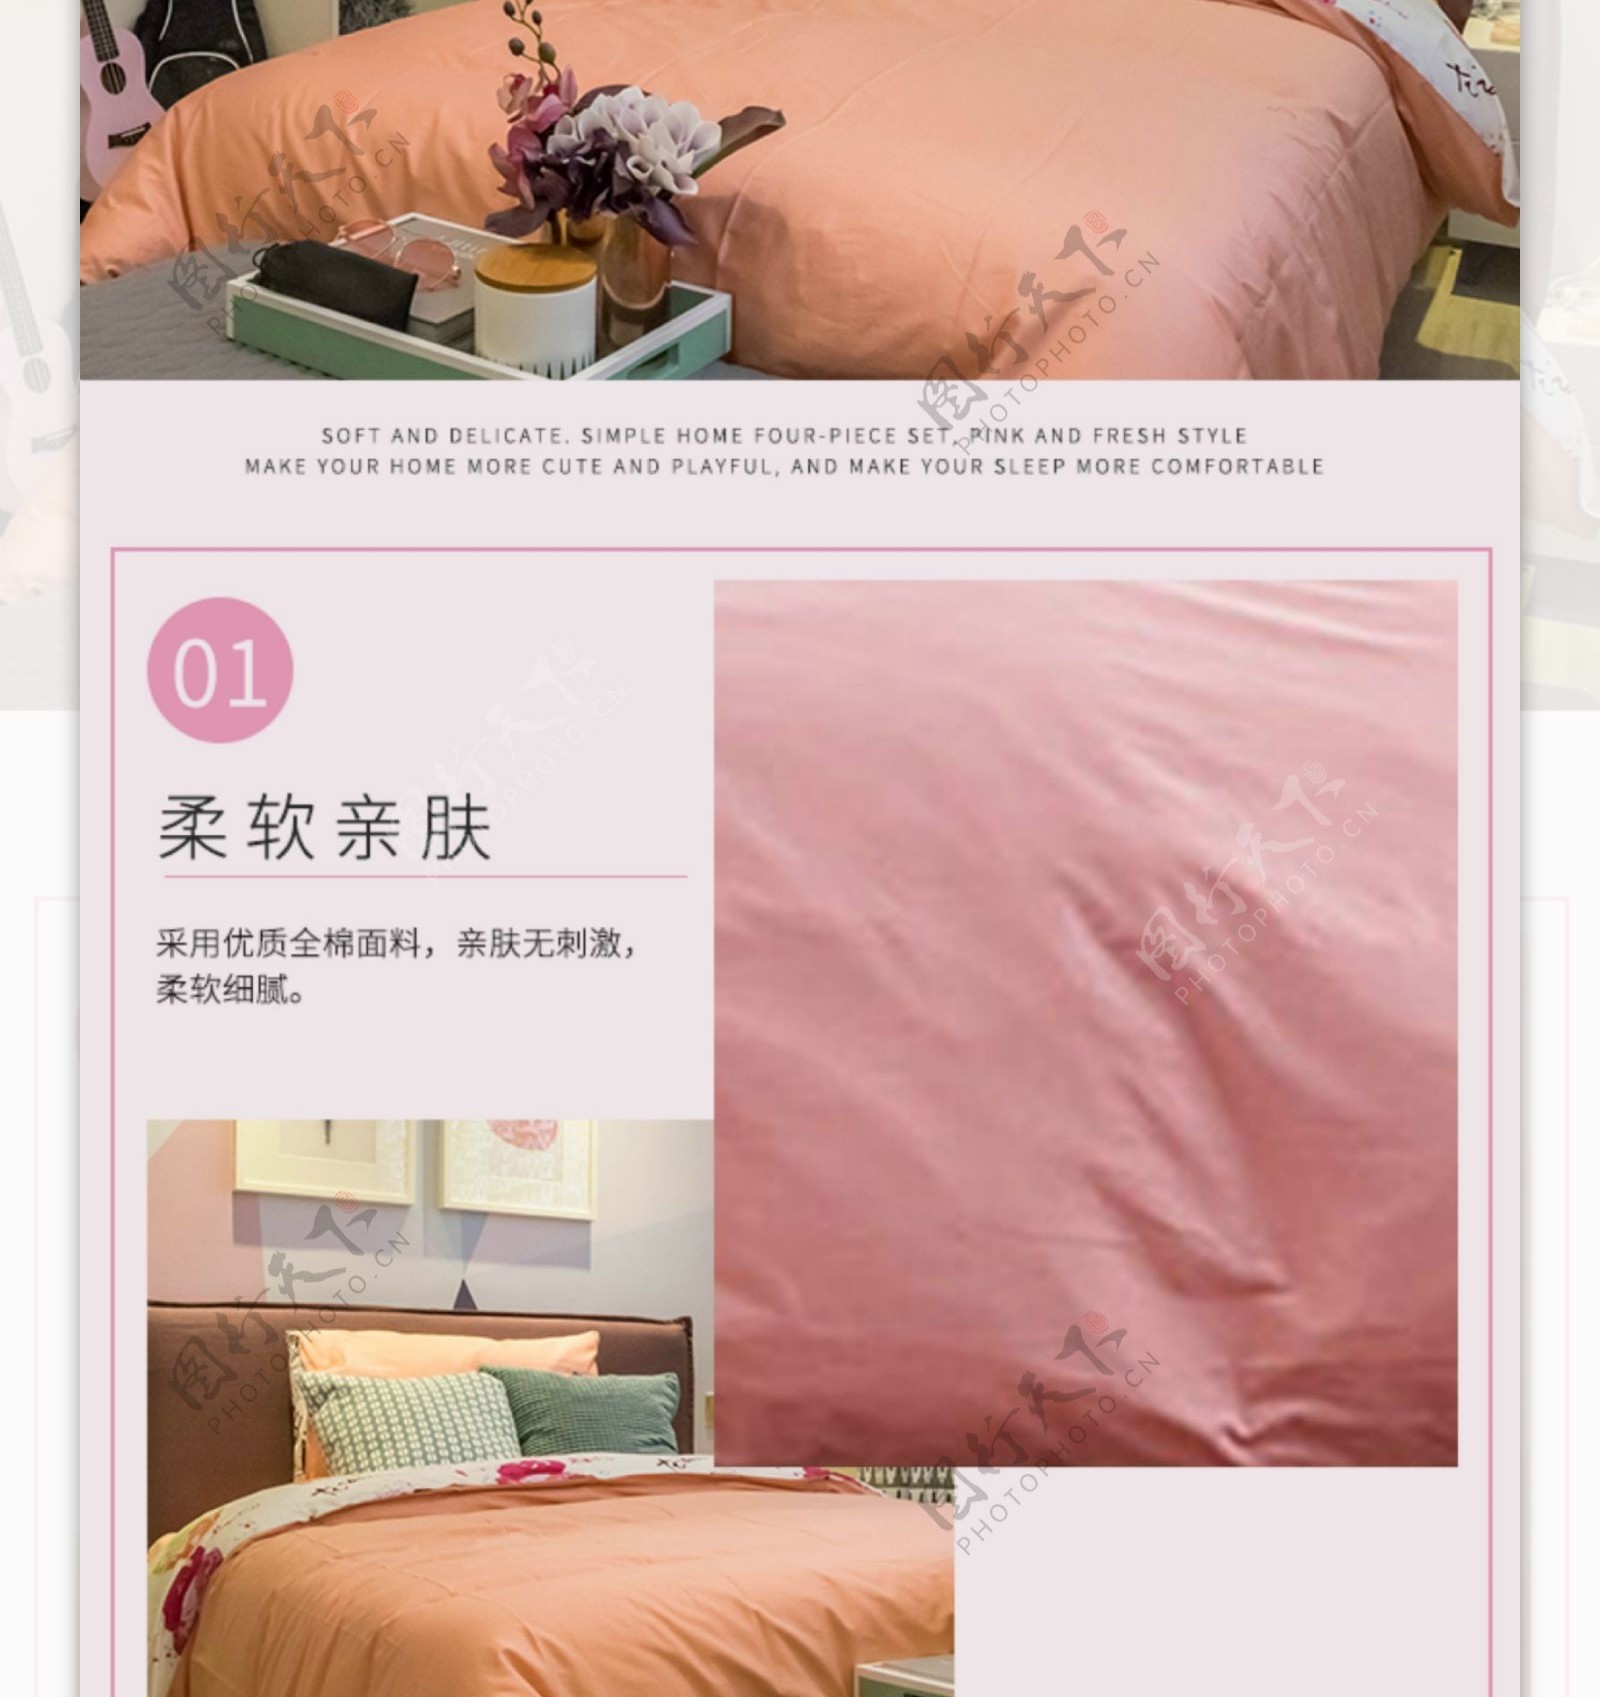 粉色床上四件套促销淘宝详情页模板